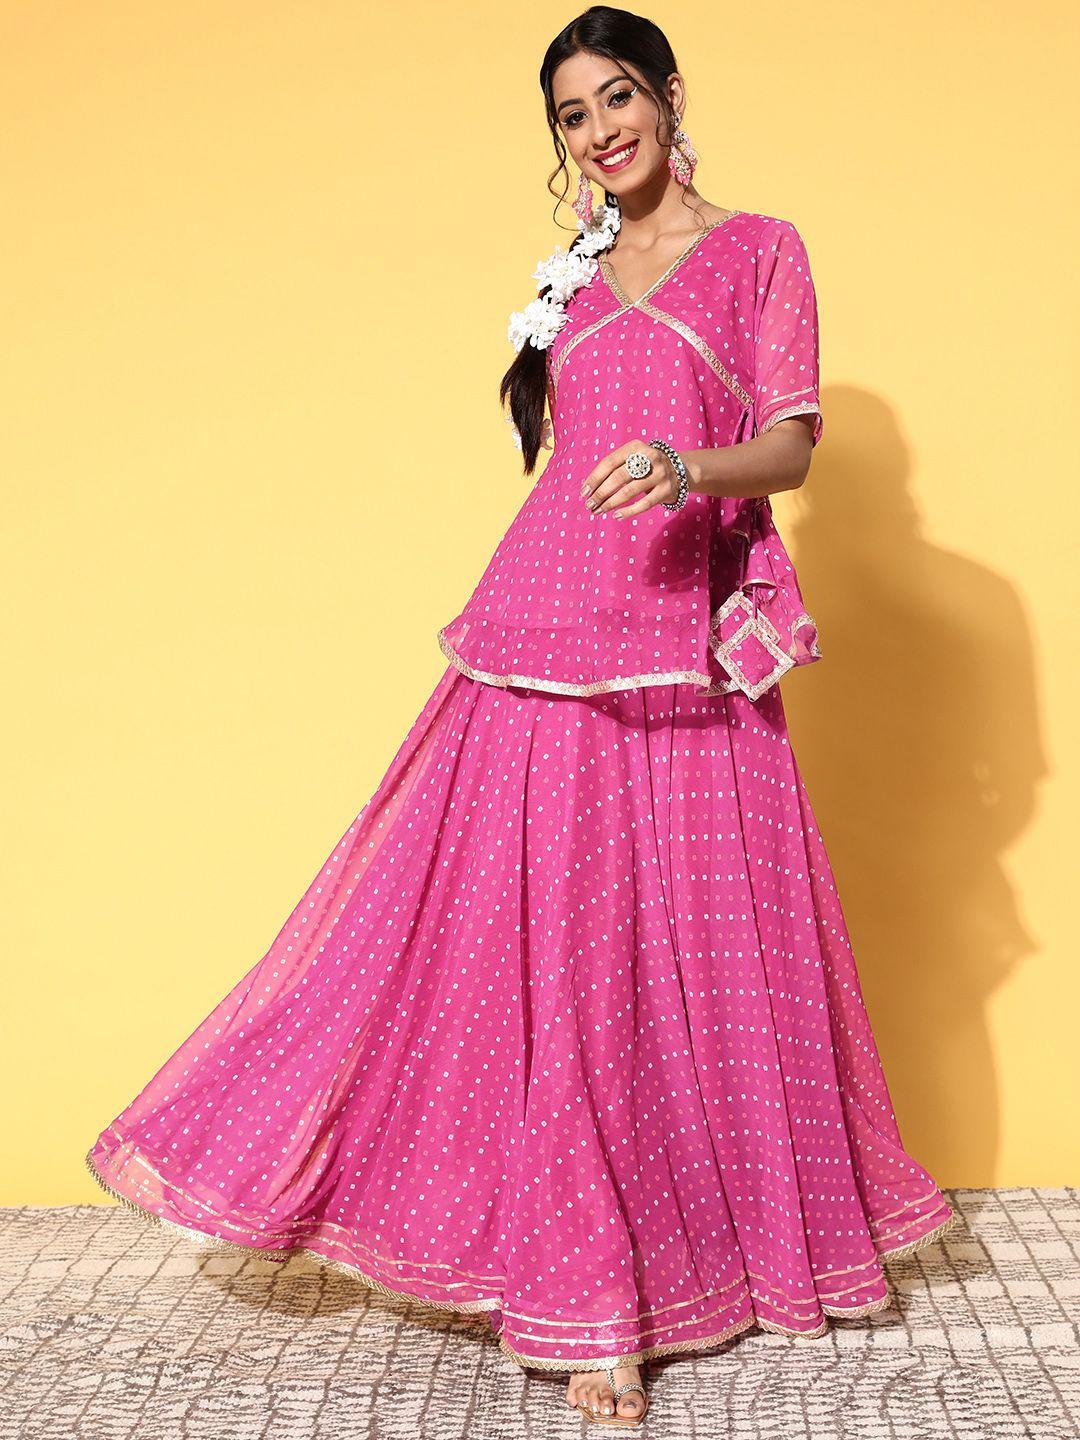 inddus women pink bandhani printed tie up top & skirt